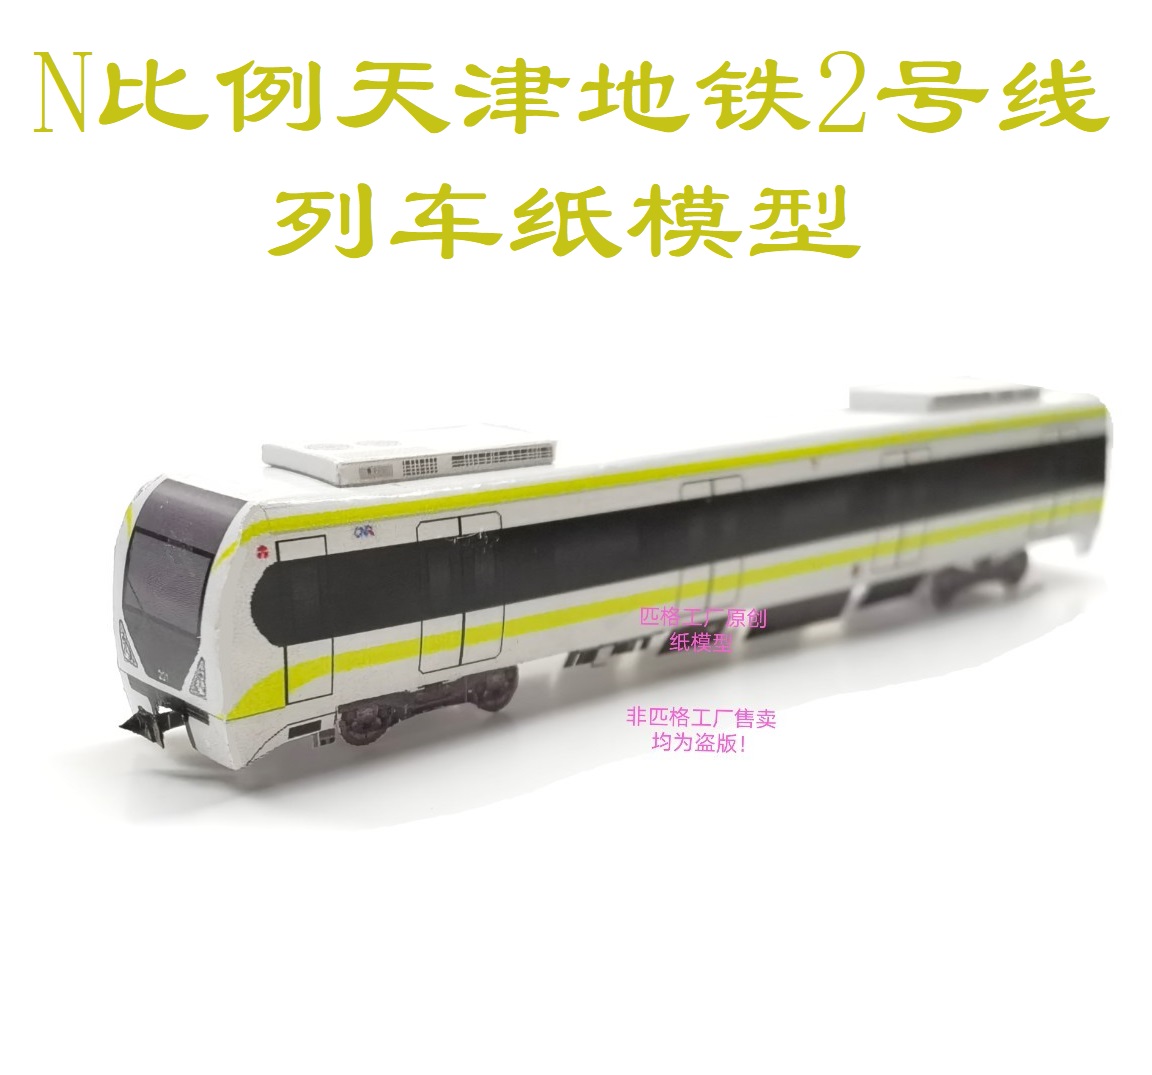 匹格N比例天津地铁2号线地铁模型3D纸模DIY火车高铁地铁轻轨模型